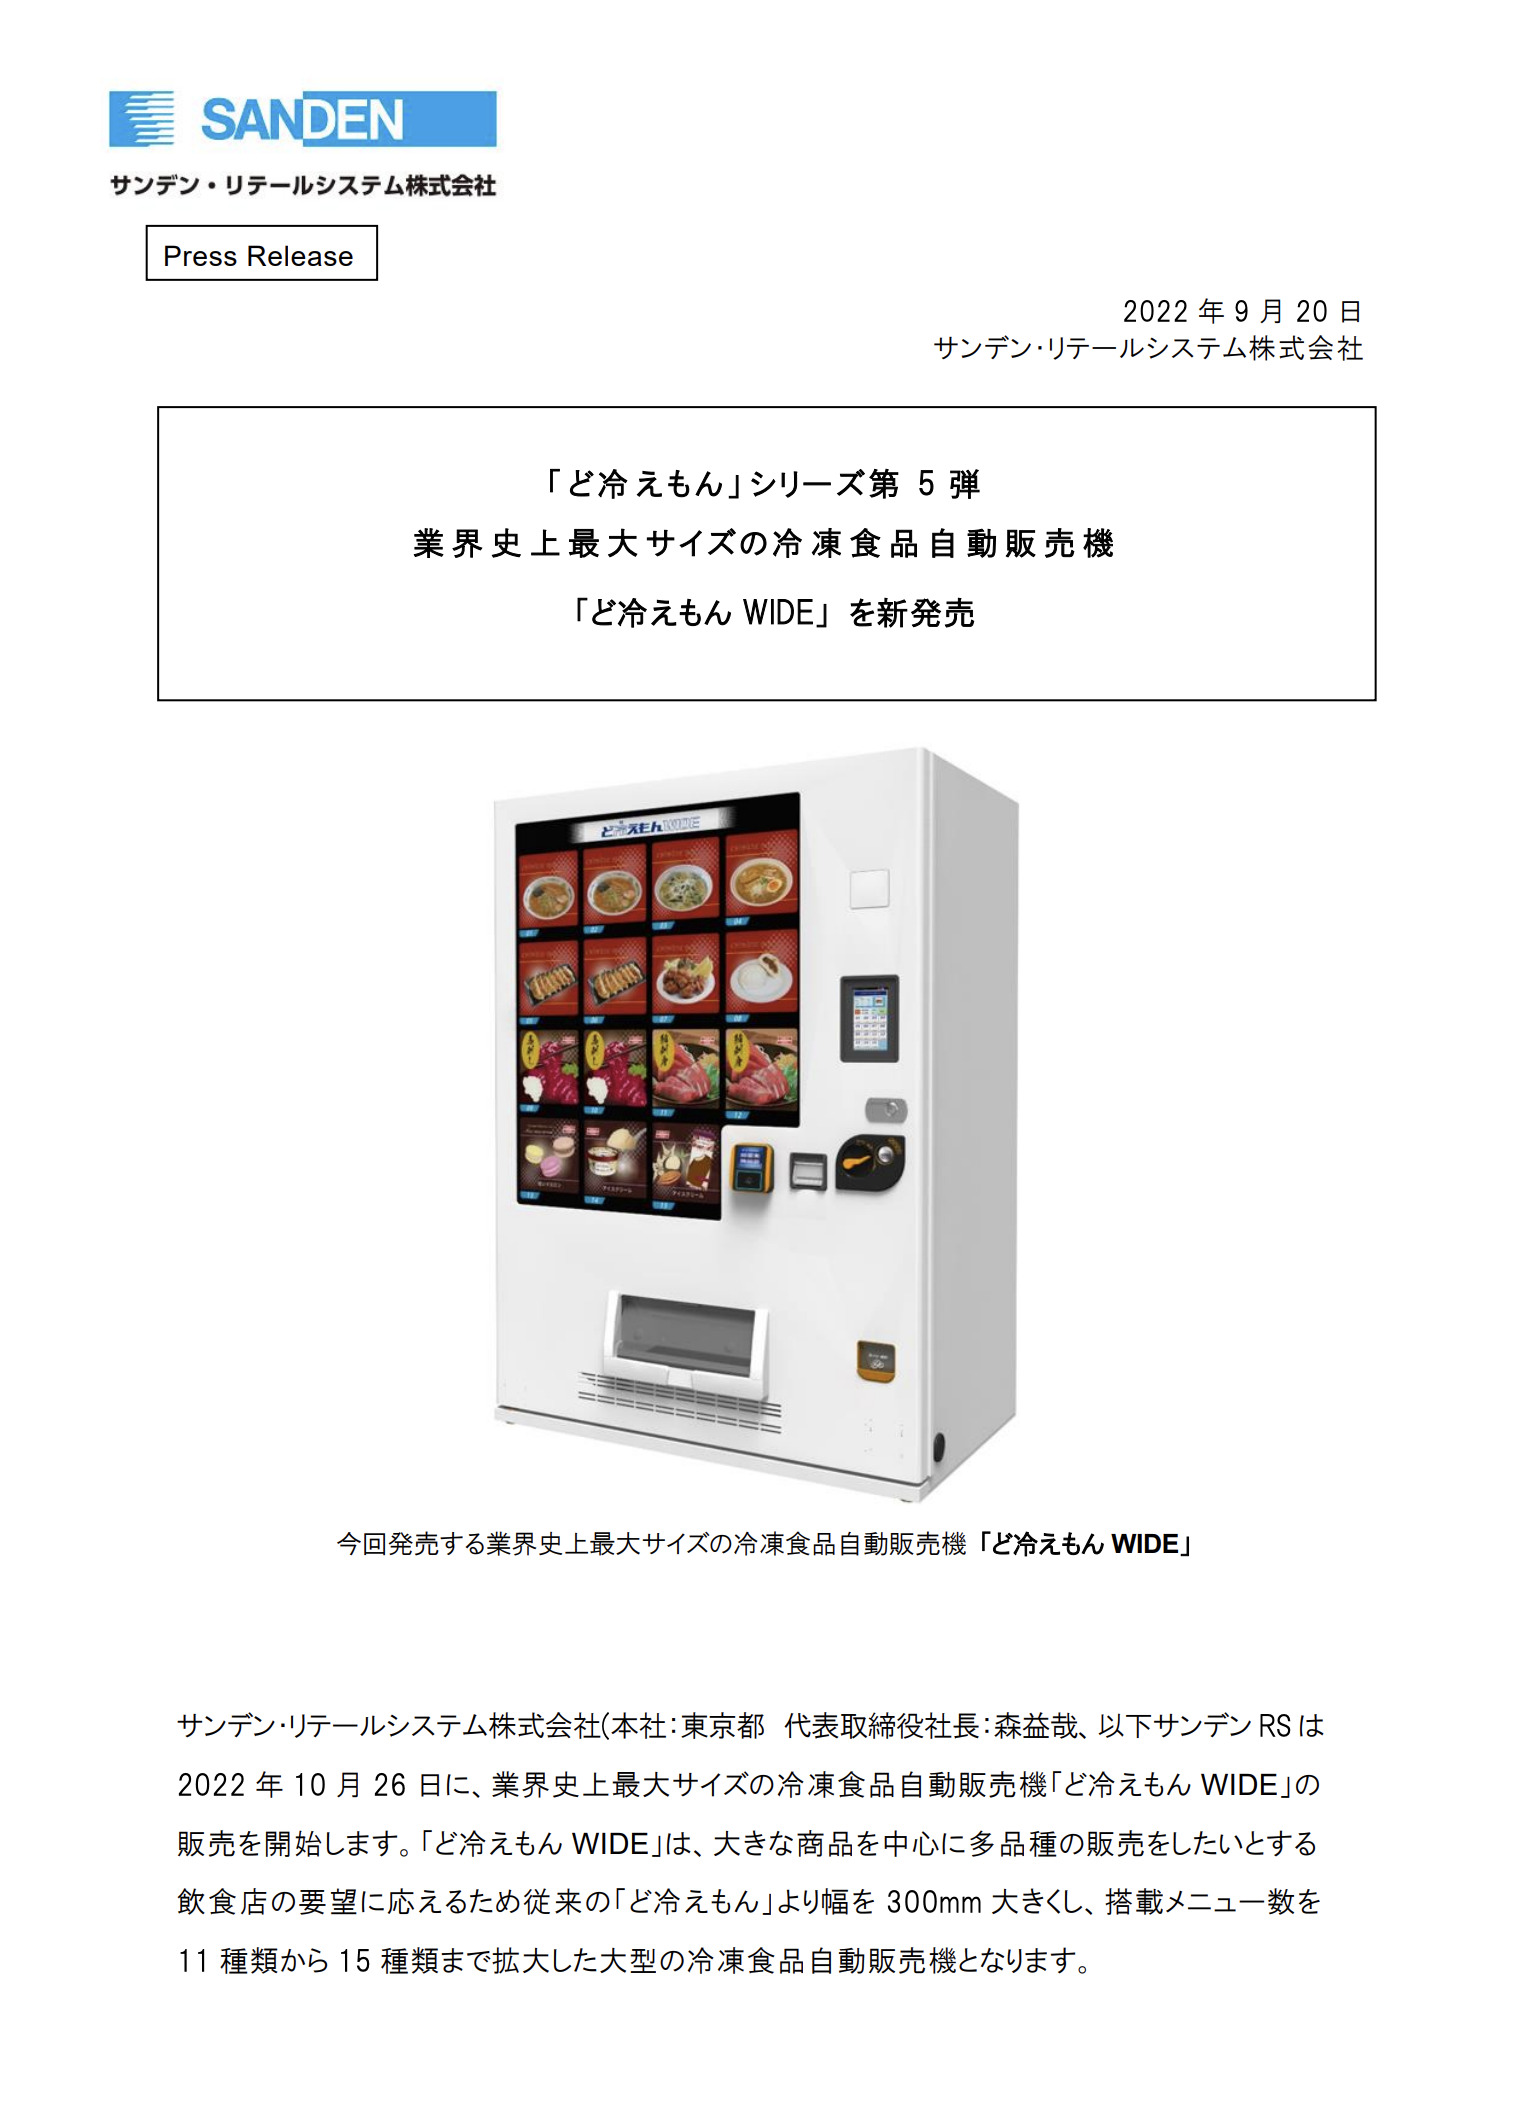 ど冷えもん 」シリーズ第5弾 業界史上最大サイズの冷凍食品自動販売機